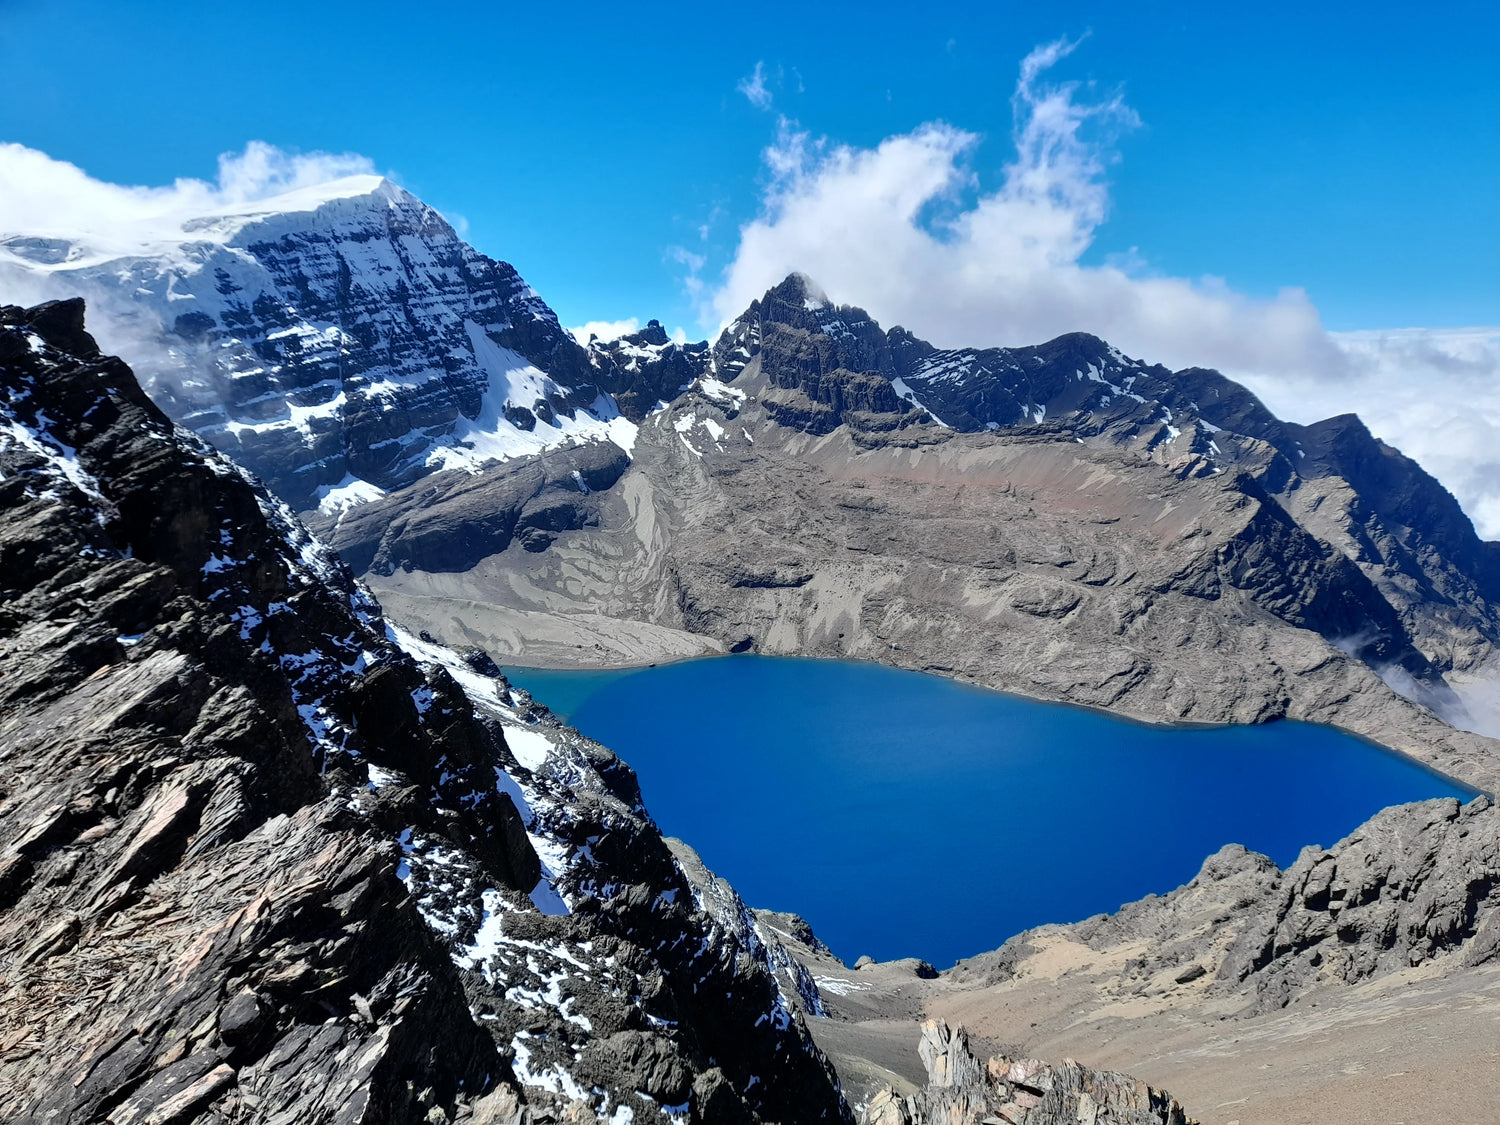 Bergsteiger und Trekkingreisen nach Südamerika - https://www.suedamerikatours.de/